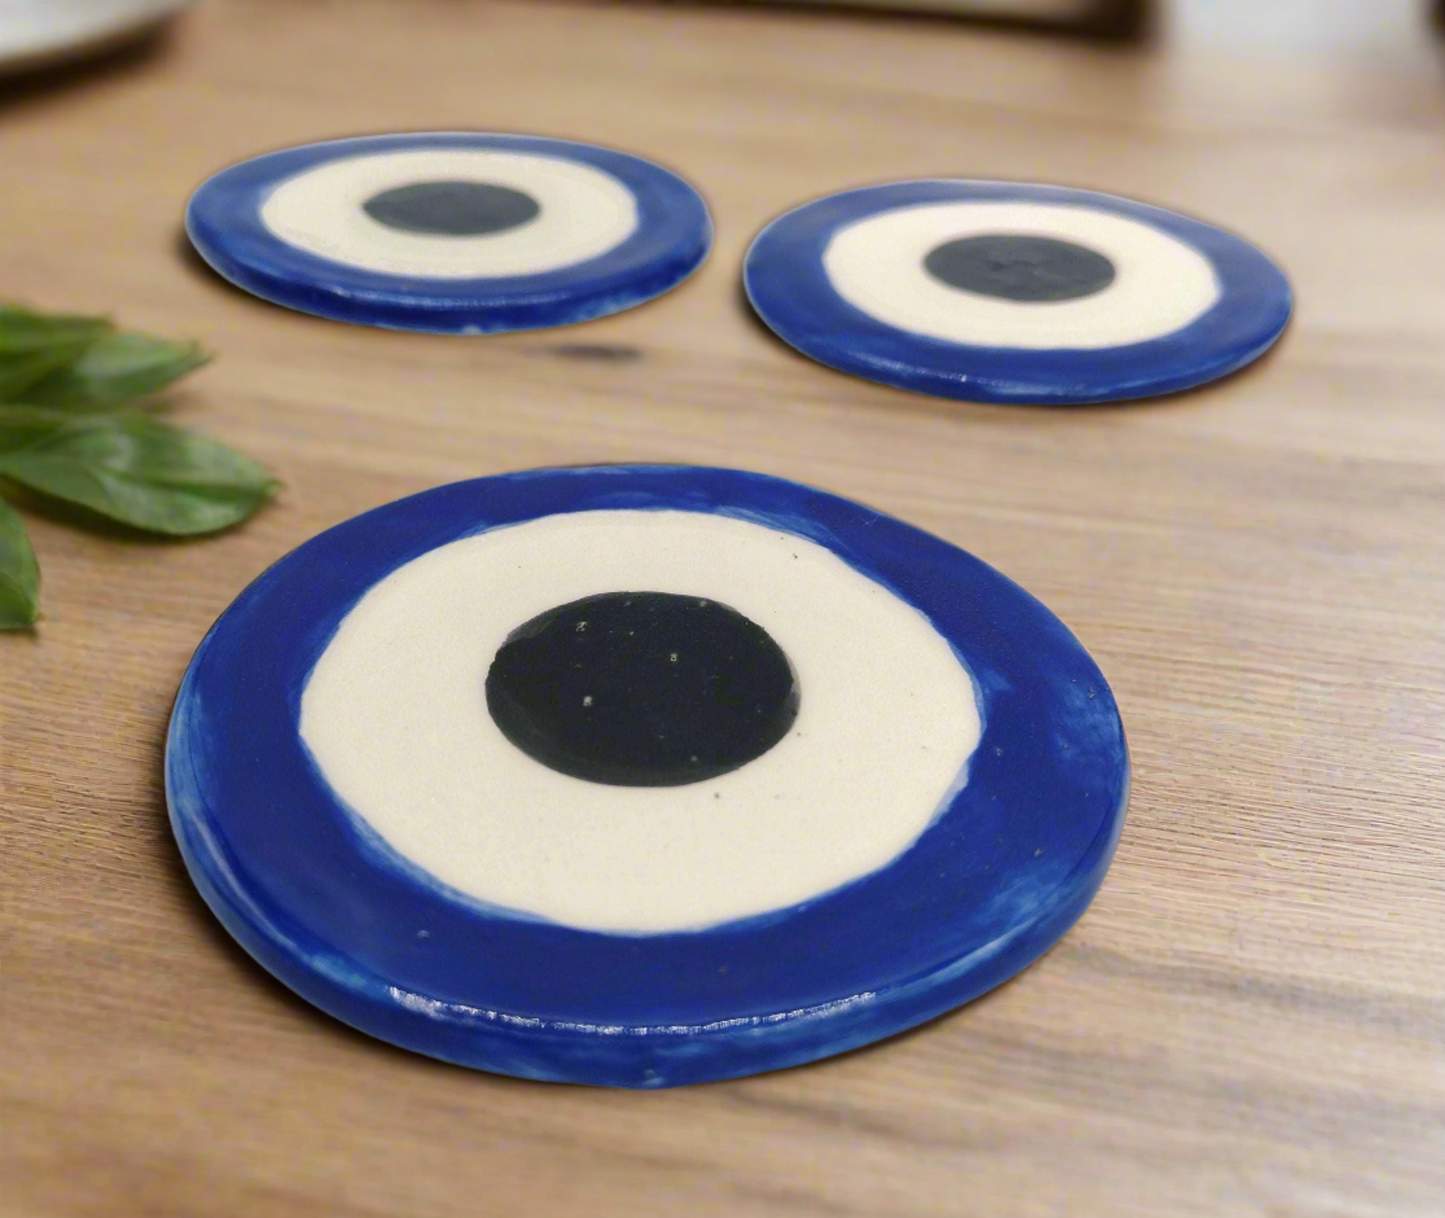 1 Stück handgefertigte blaue Böse-Augen-Untersetzer aus Keramik für Getränke, Muttertagsgeschenk für Frauen, Mutter-Geburtstagsgeschenk, handgefertigte Keramik-Bestseller